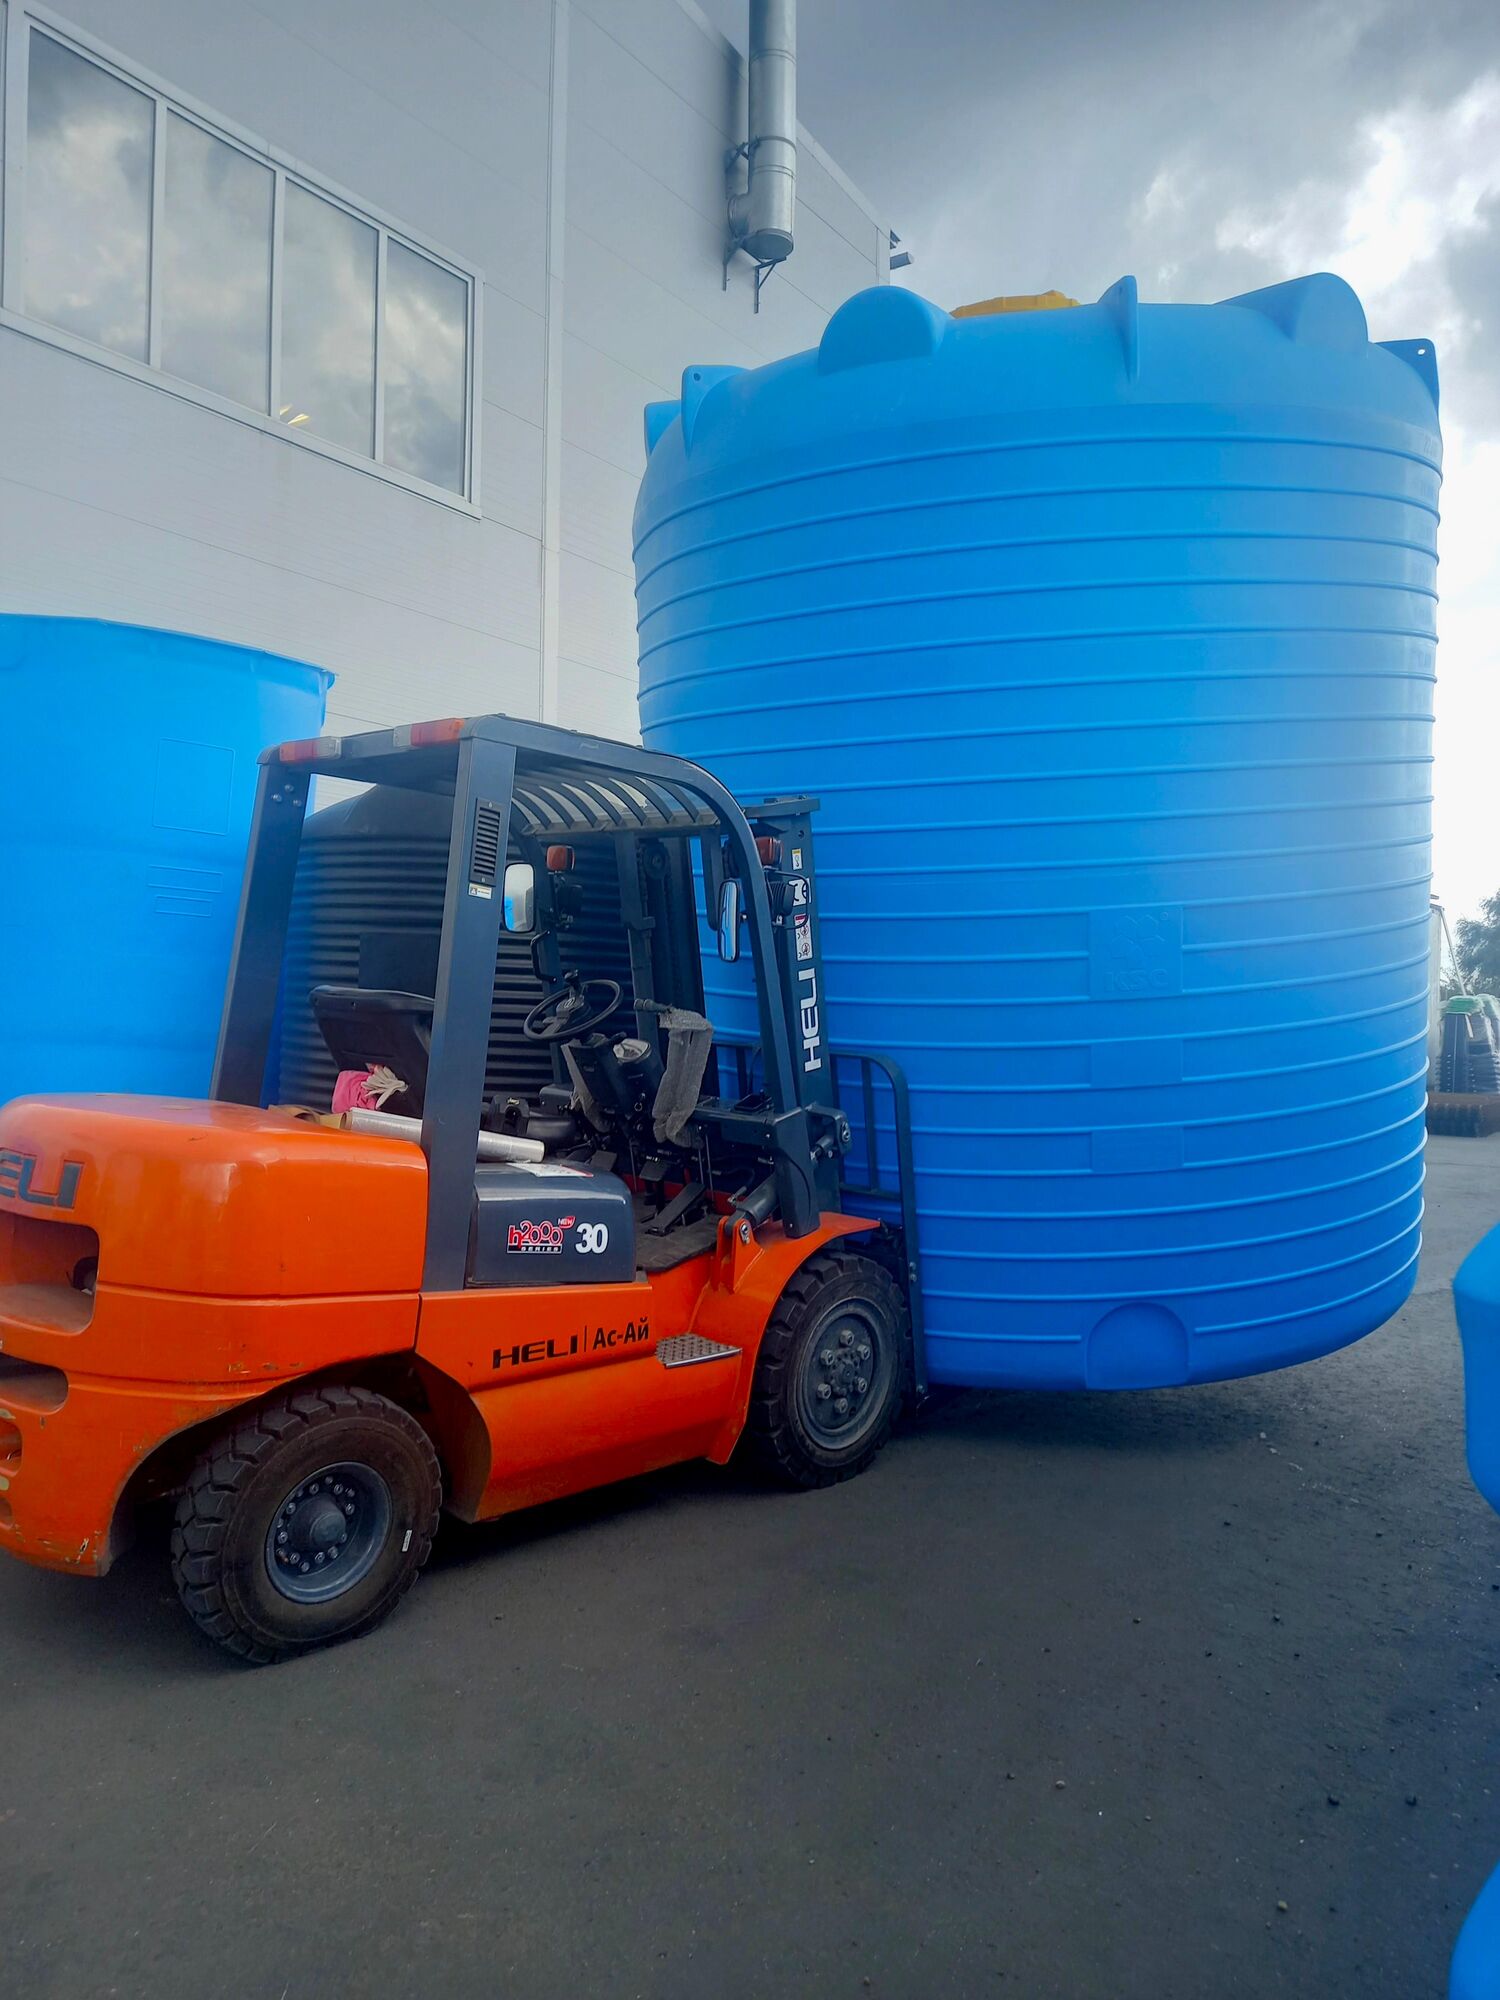 Бочка для полива пластиковая 25000 литров (25 куб.м), капельного автополива, водоснабжения в СНТ, дачных товариществах